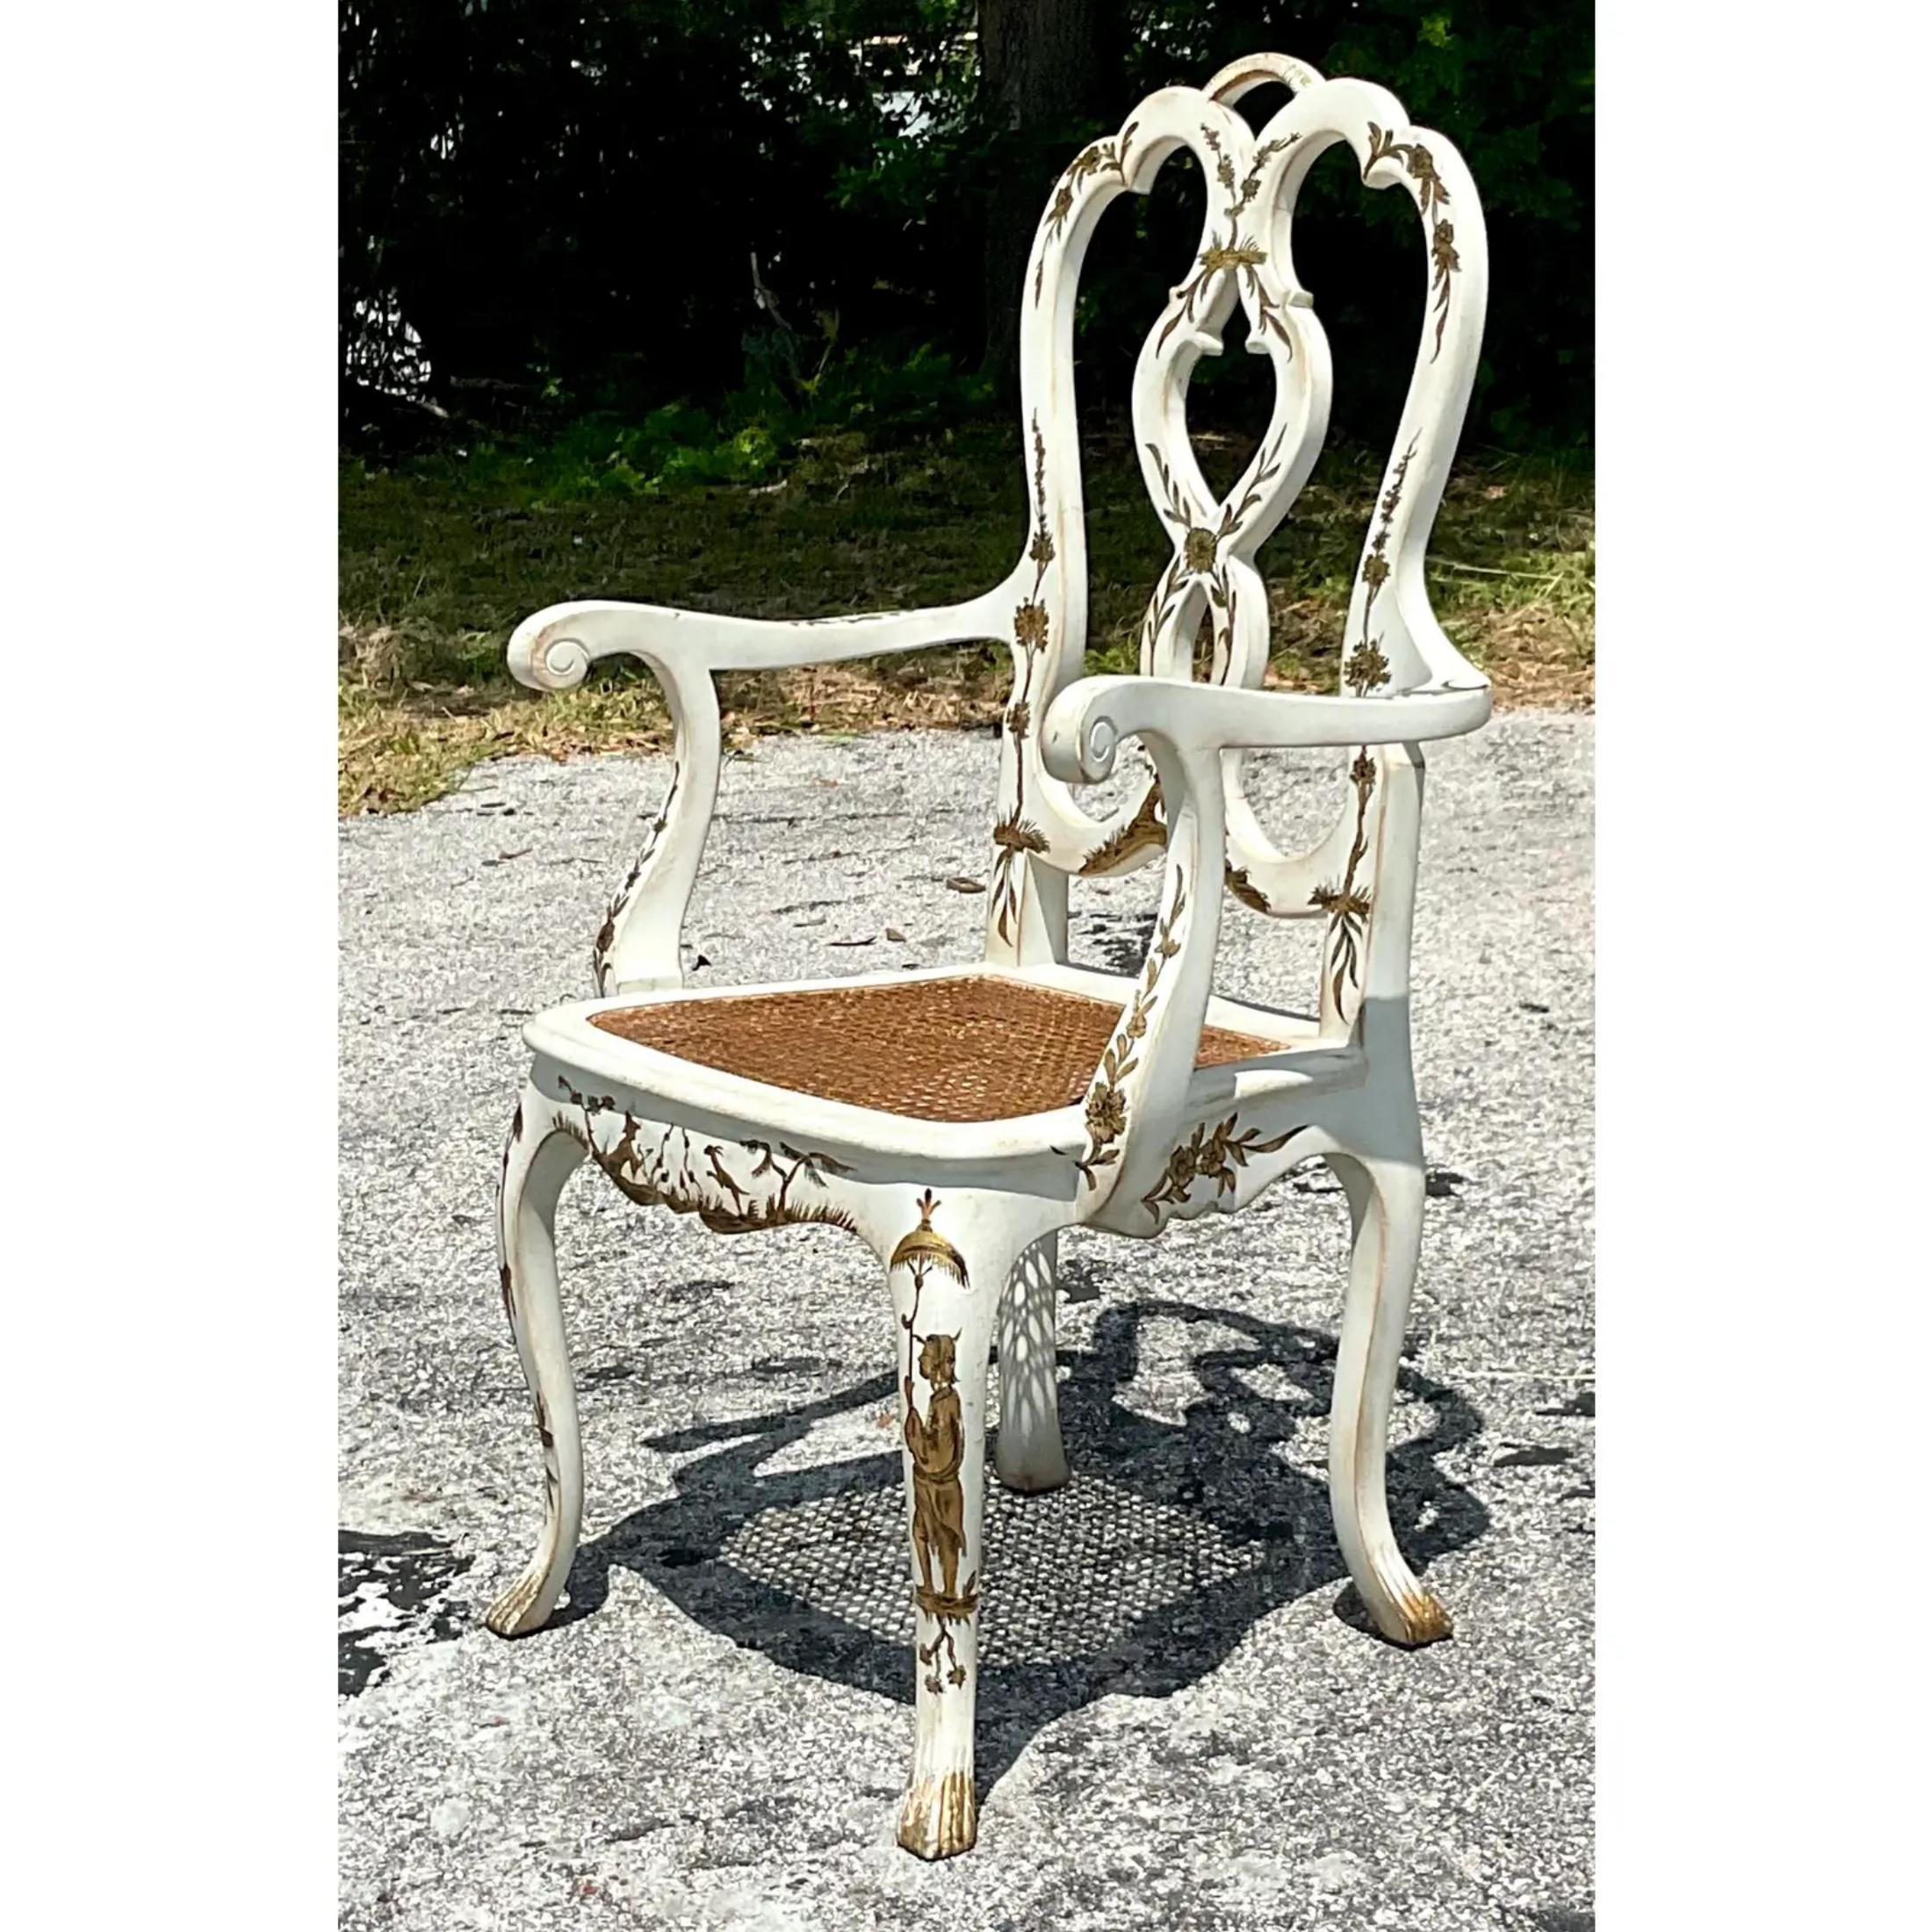 Eine fabelhafte Vintage Regency Arm Stühle. Ein schicker Chippendale-Rahmen mit handbemaltem Chinoiserie-Sitz. Eingesetzter Sitz aus Schilfrohr. Perfekt als Schreibtischstuhl oder einfach nur als herrliche zusätzliche Sitzgelegenheit. Erworben aus